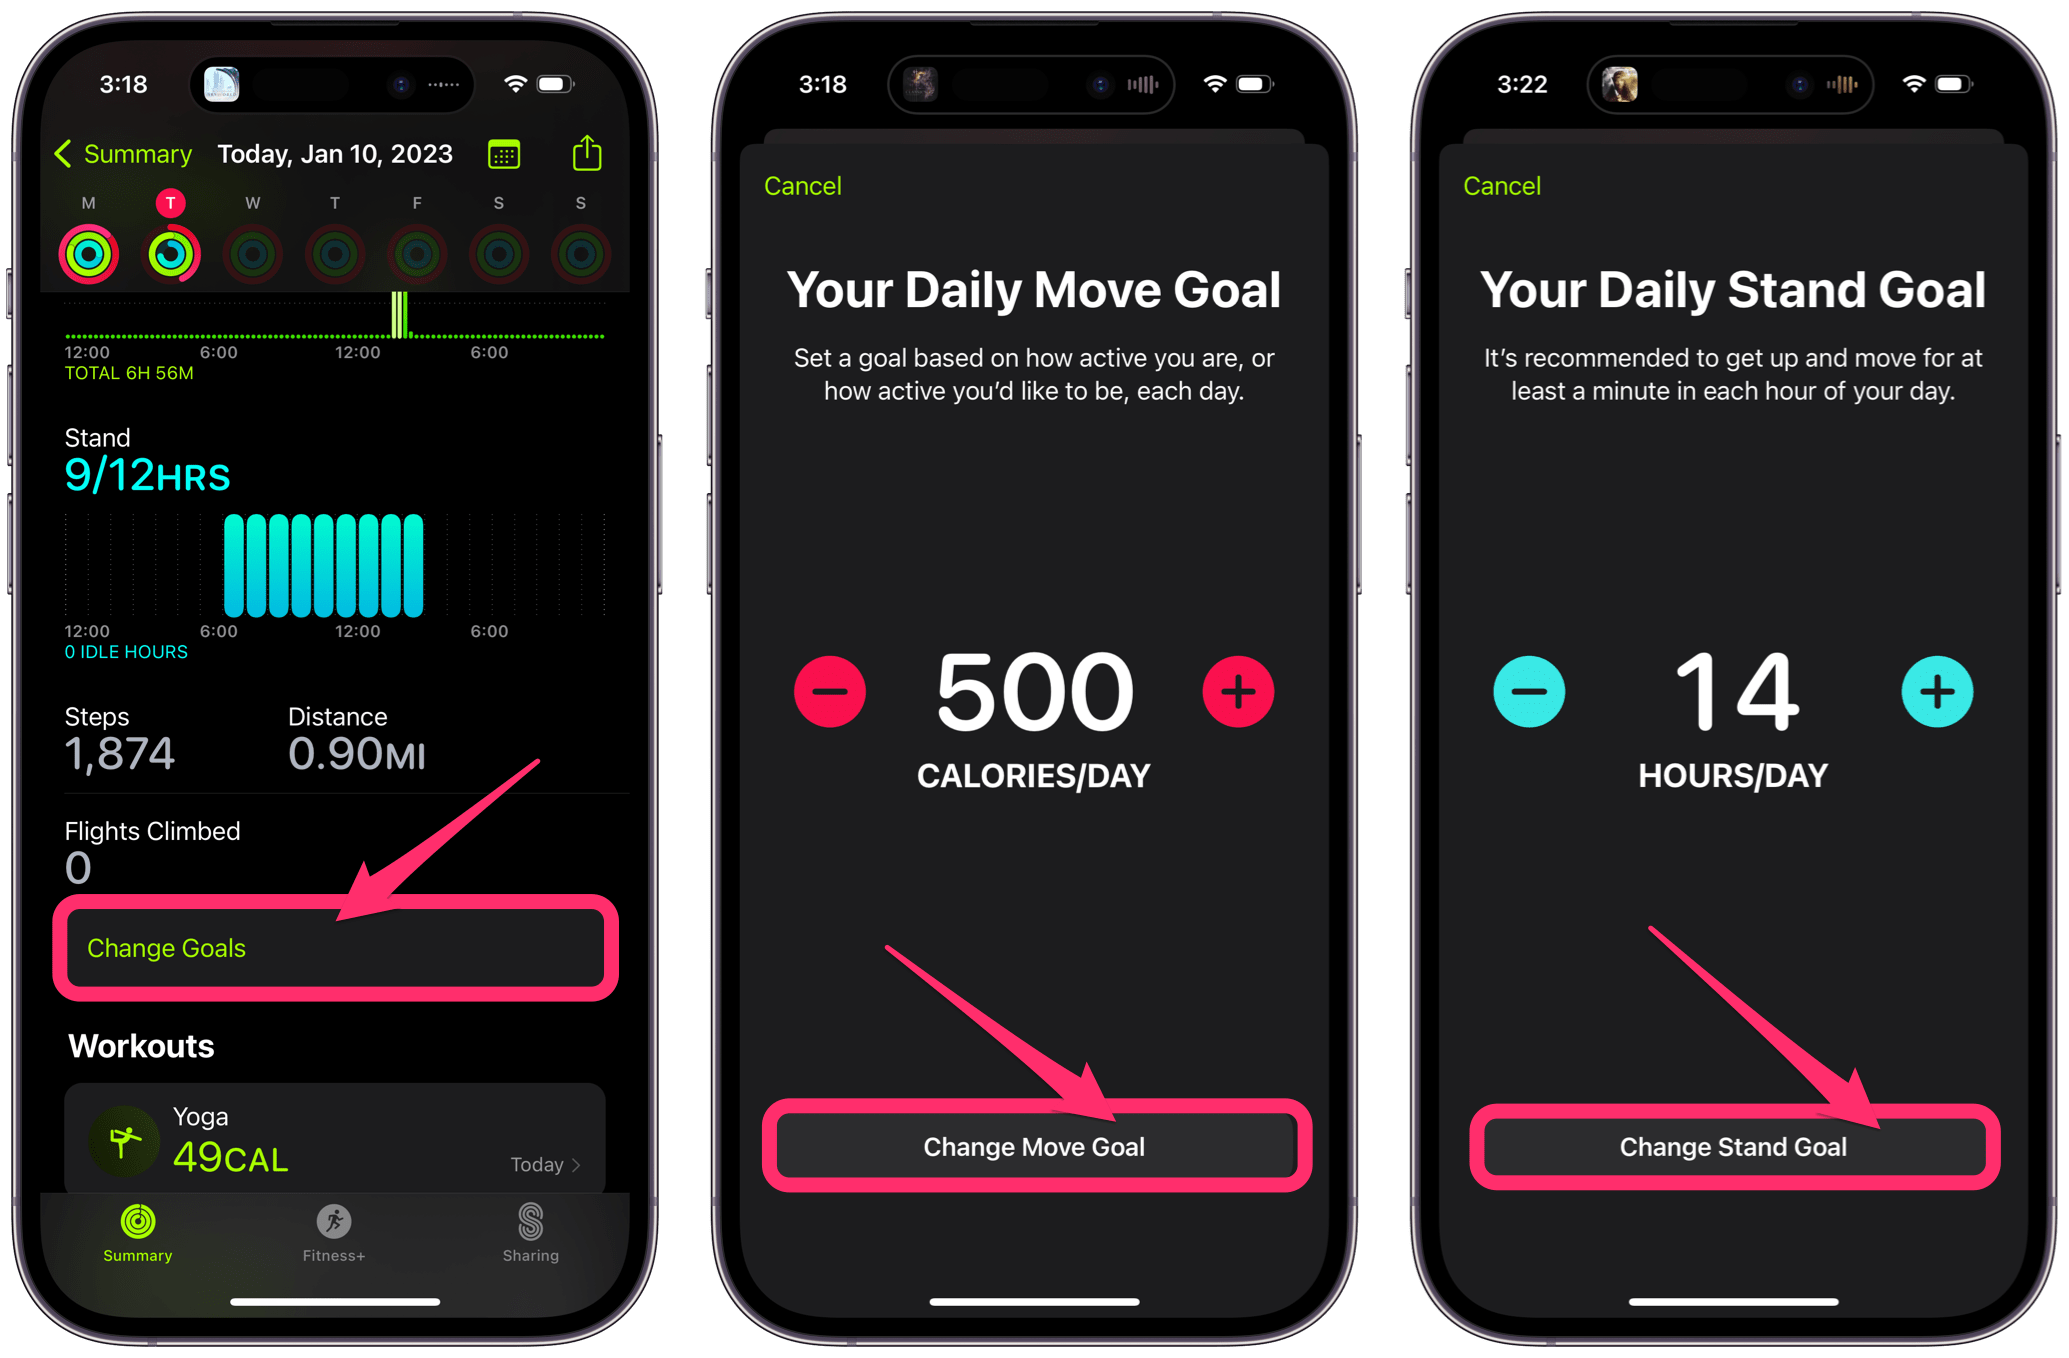 change goals in iPhone fitness app